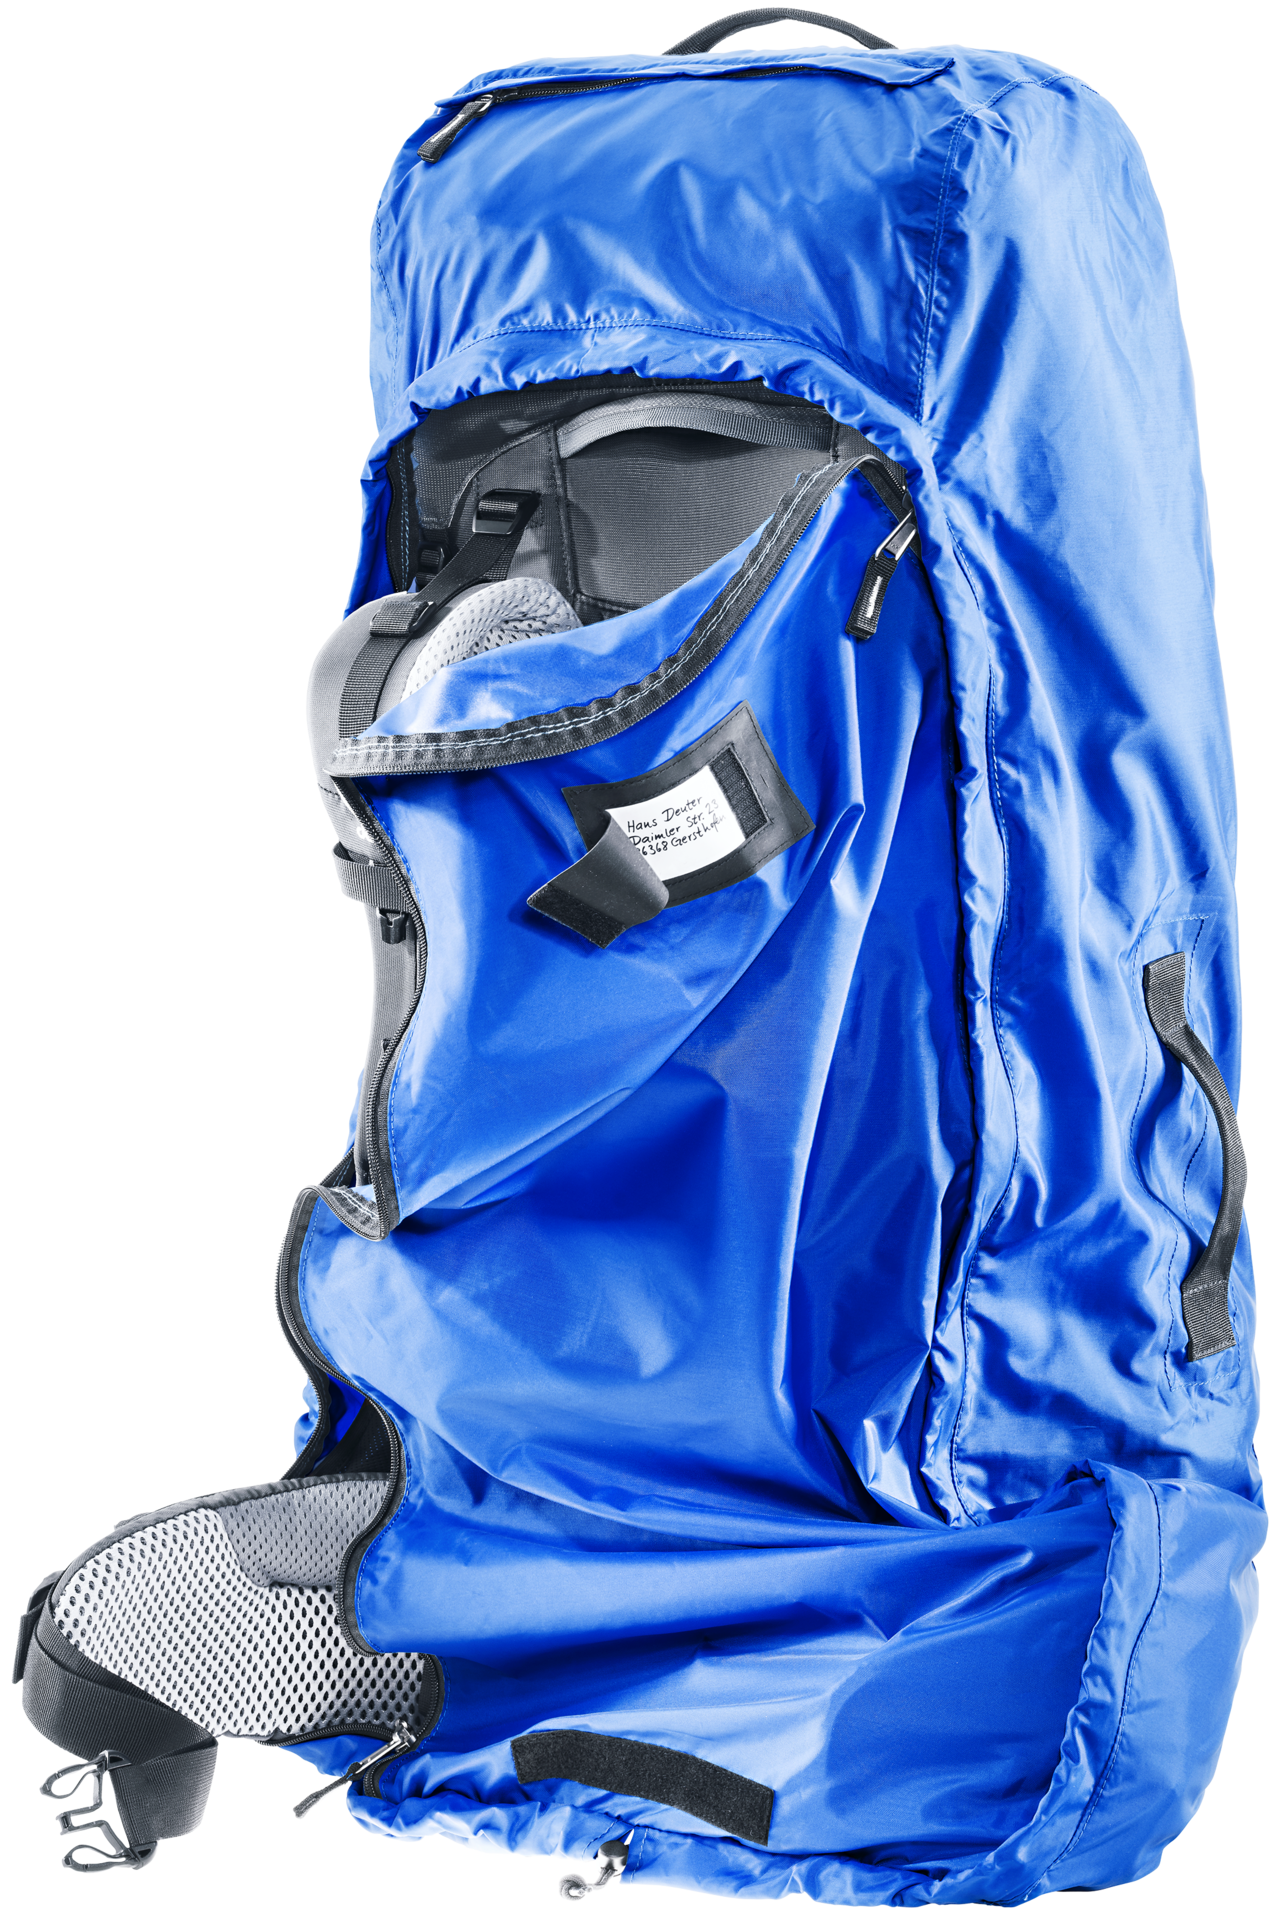 Housse de protection pluie Deuter Rain Cover II 30-50L bleue